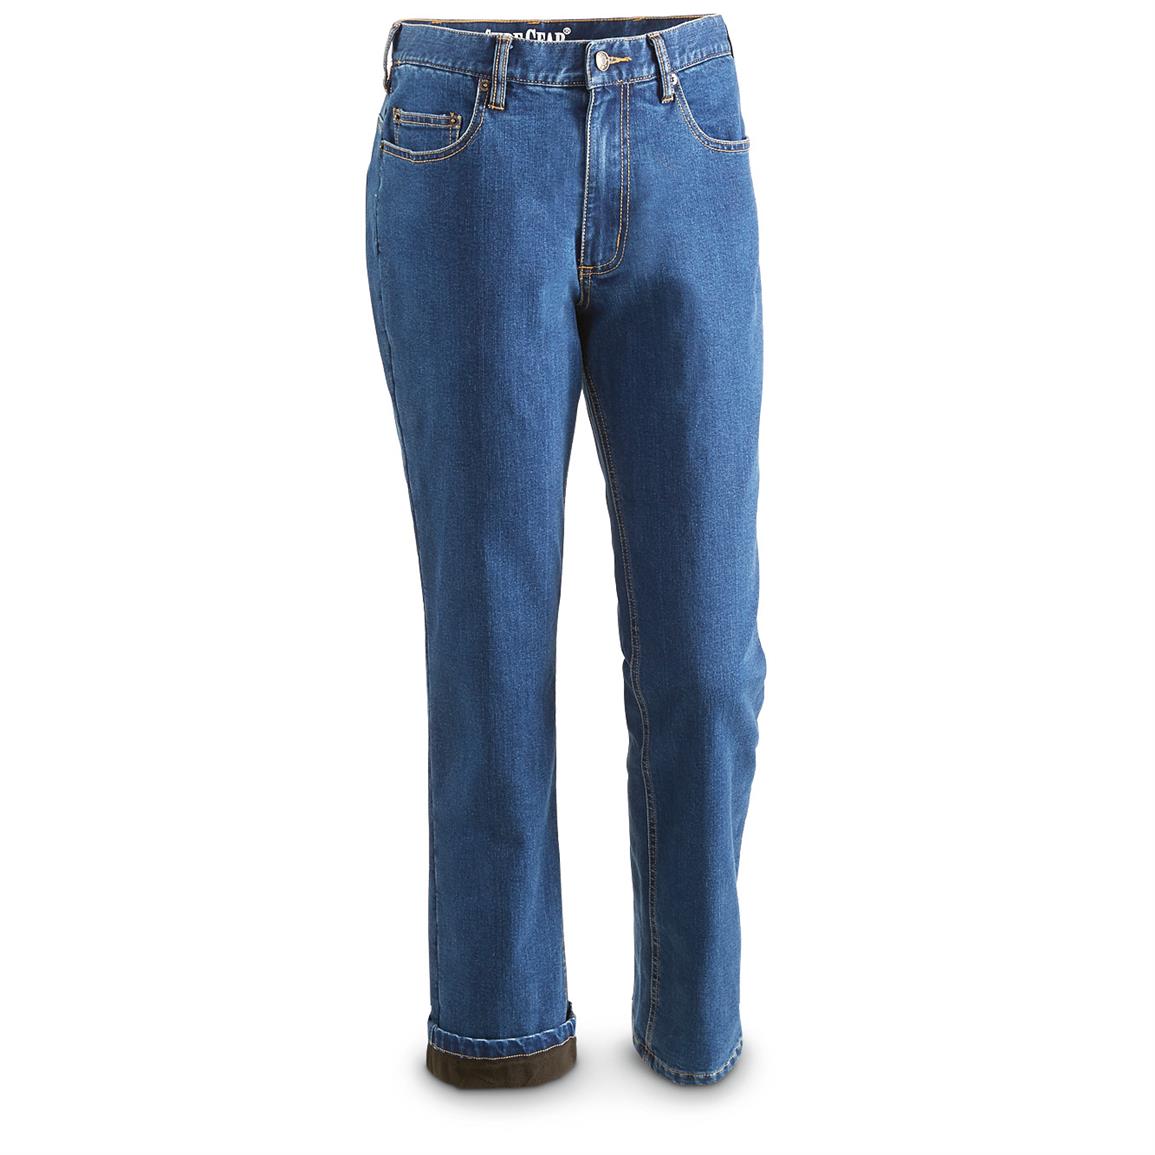 Guide Gear Women's Fleece-Lined Jeans - 672026, Jeans, Pants & Shorts ...